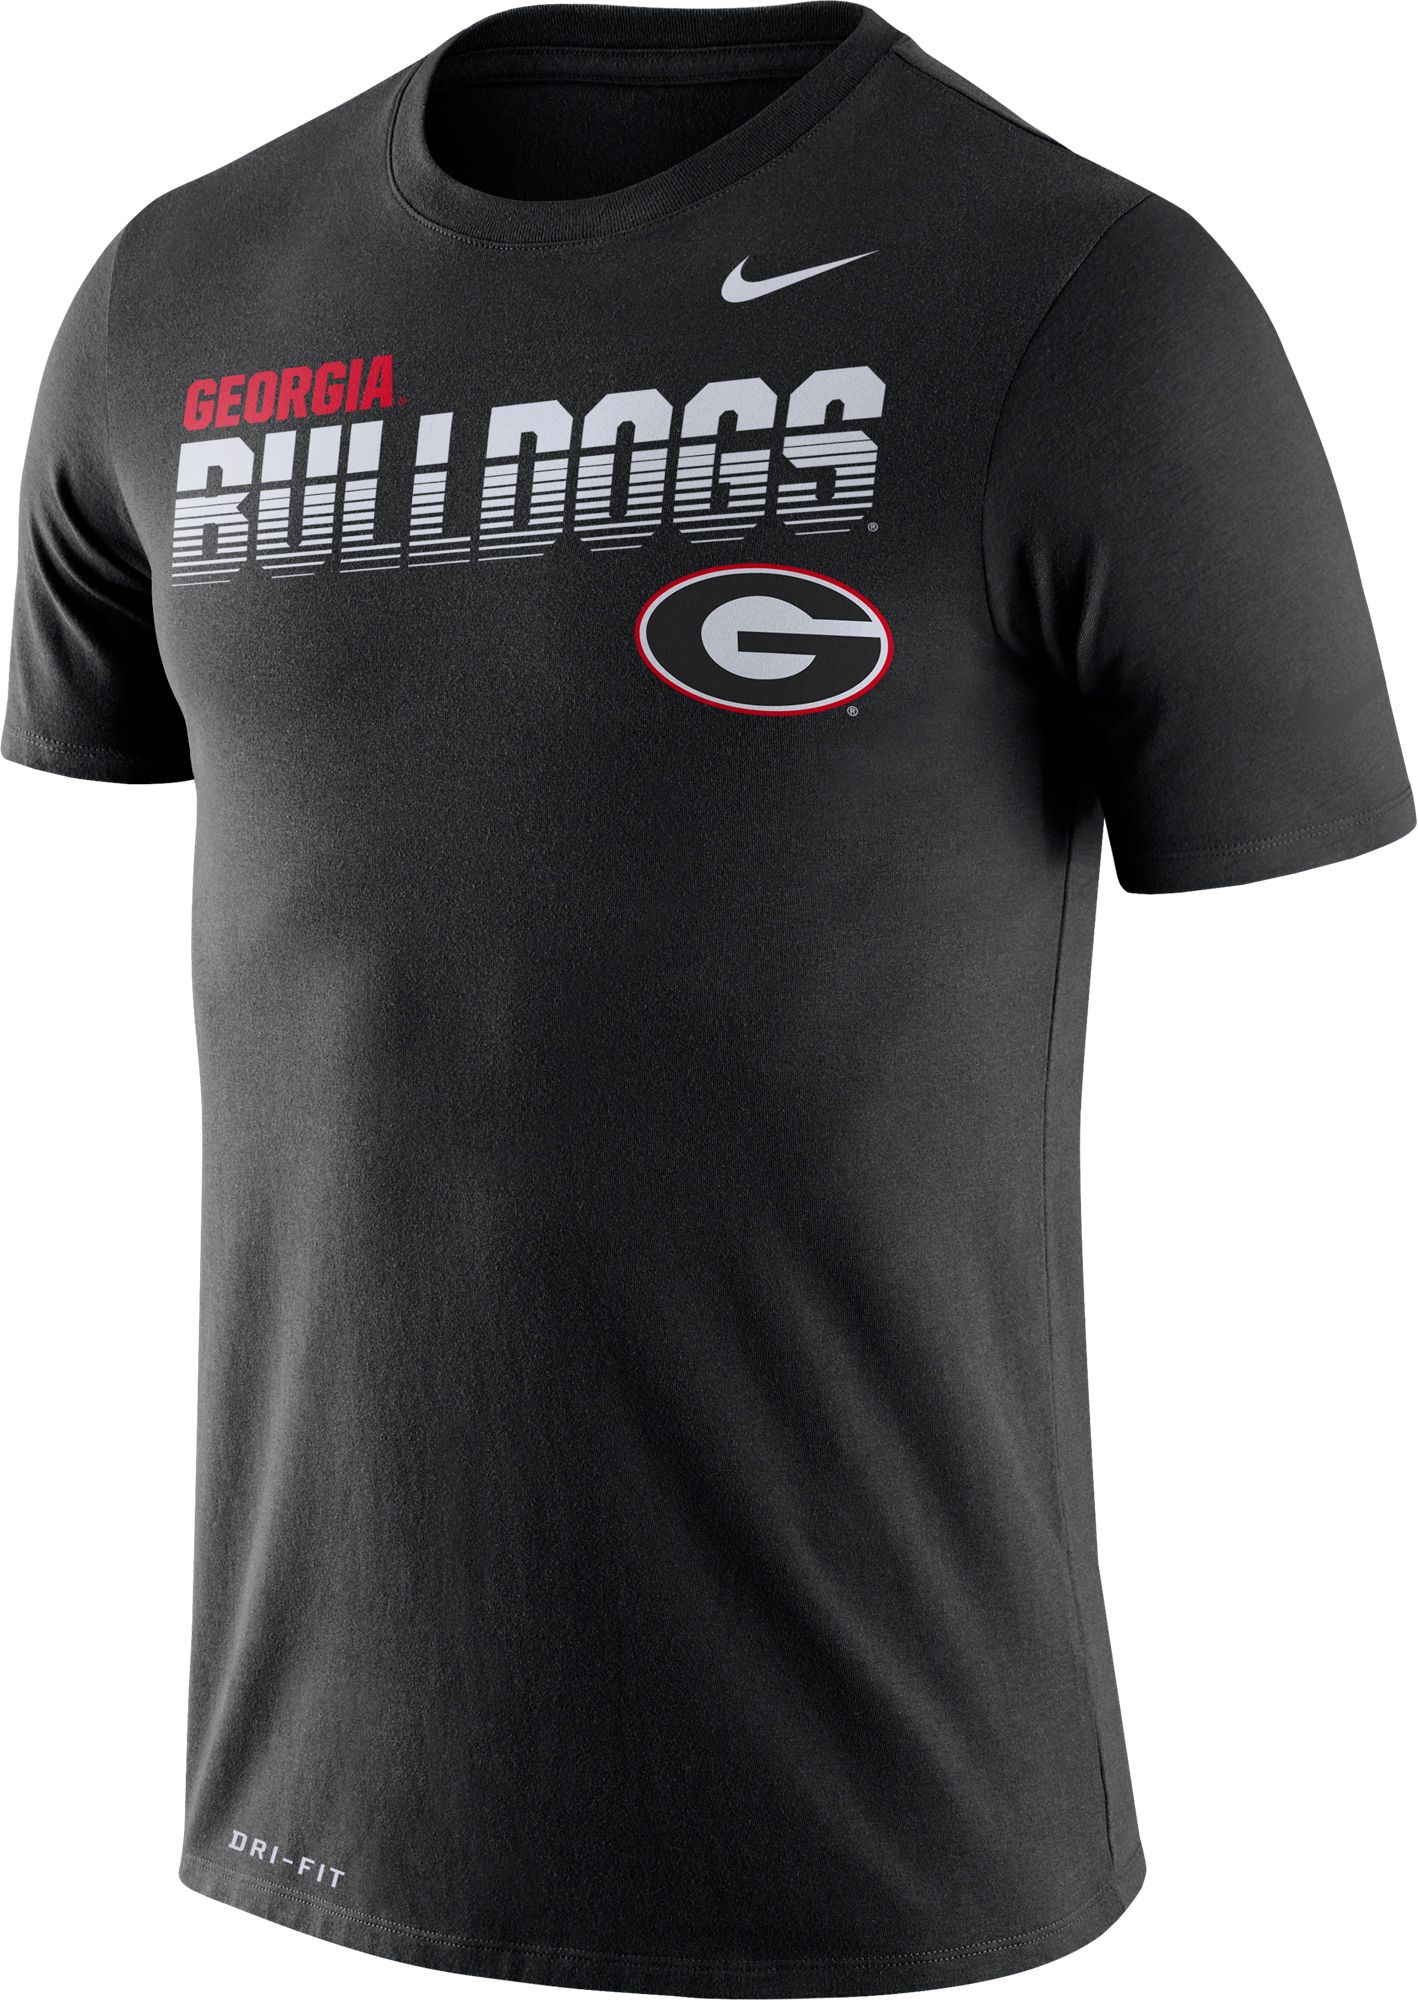 georgia bulldogs dri fit shirt